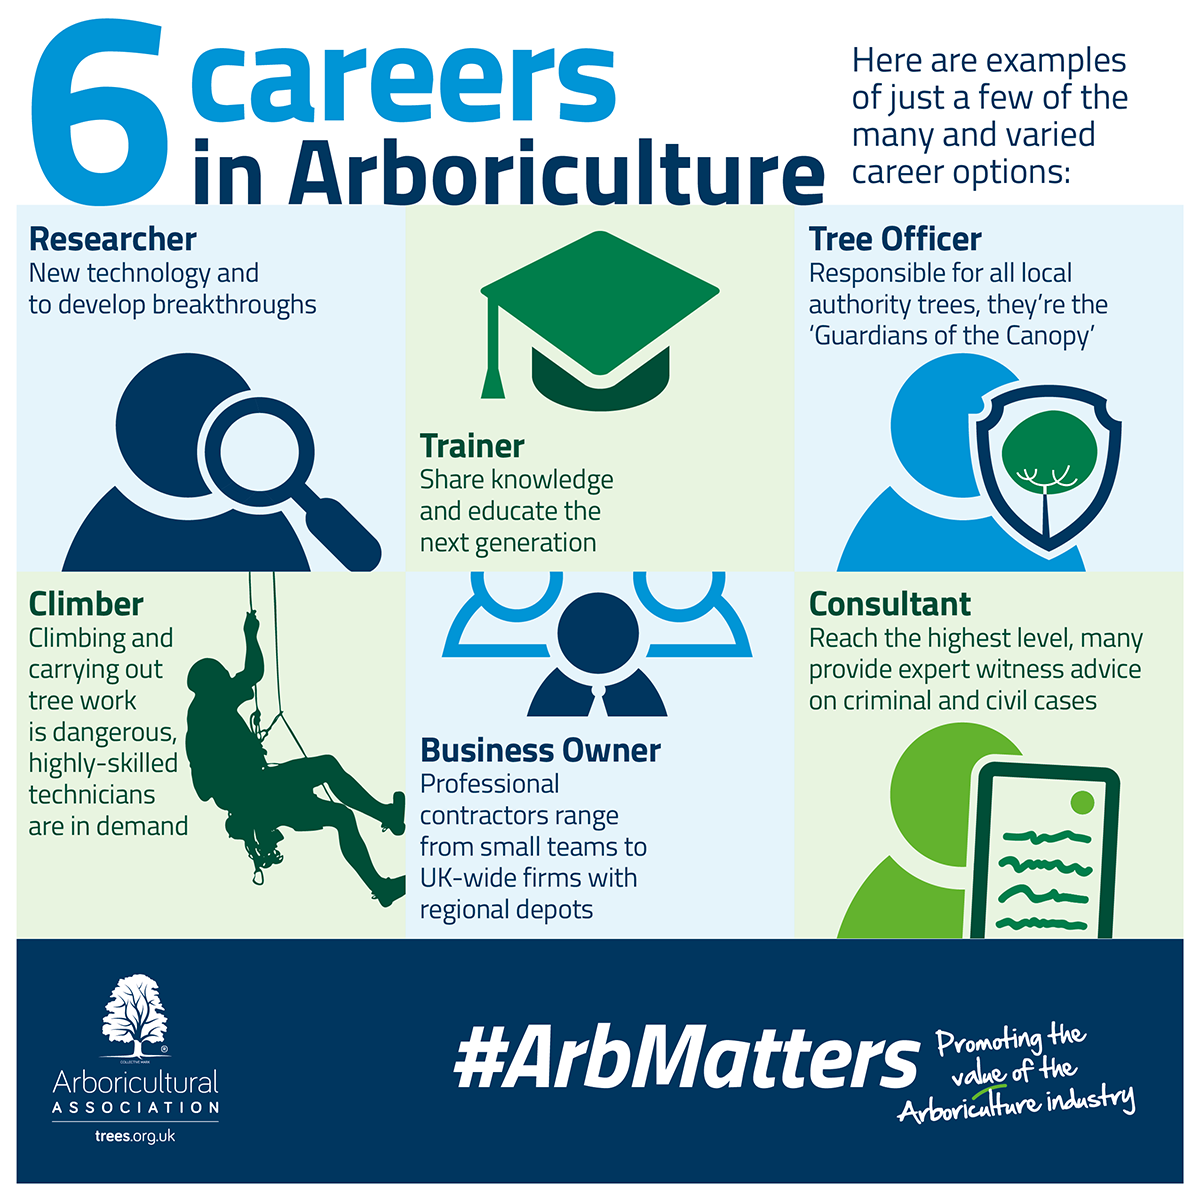 6 careers in Arboriculture